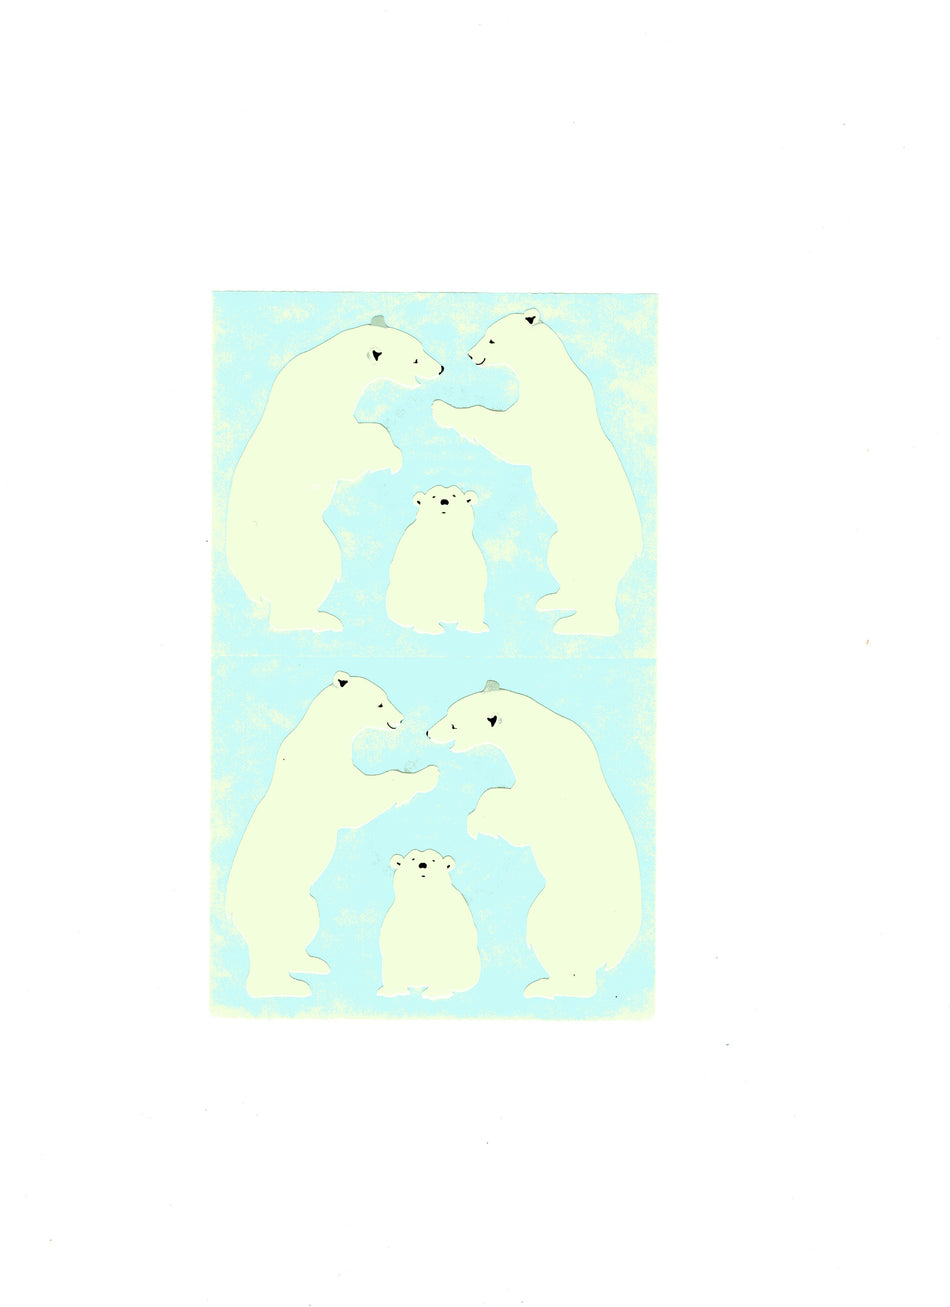 Giant Polar Bears